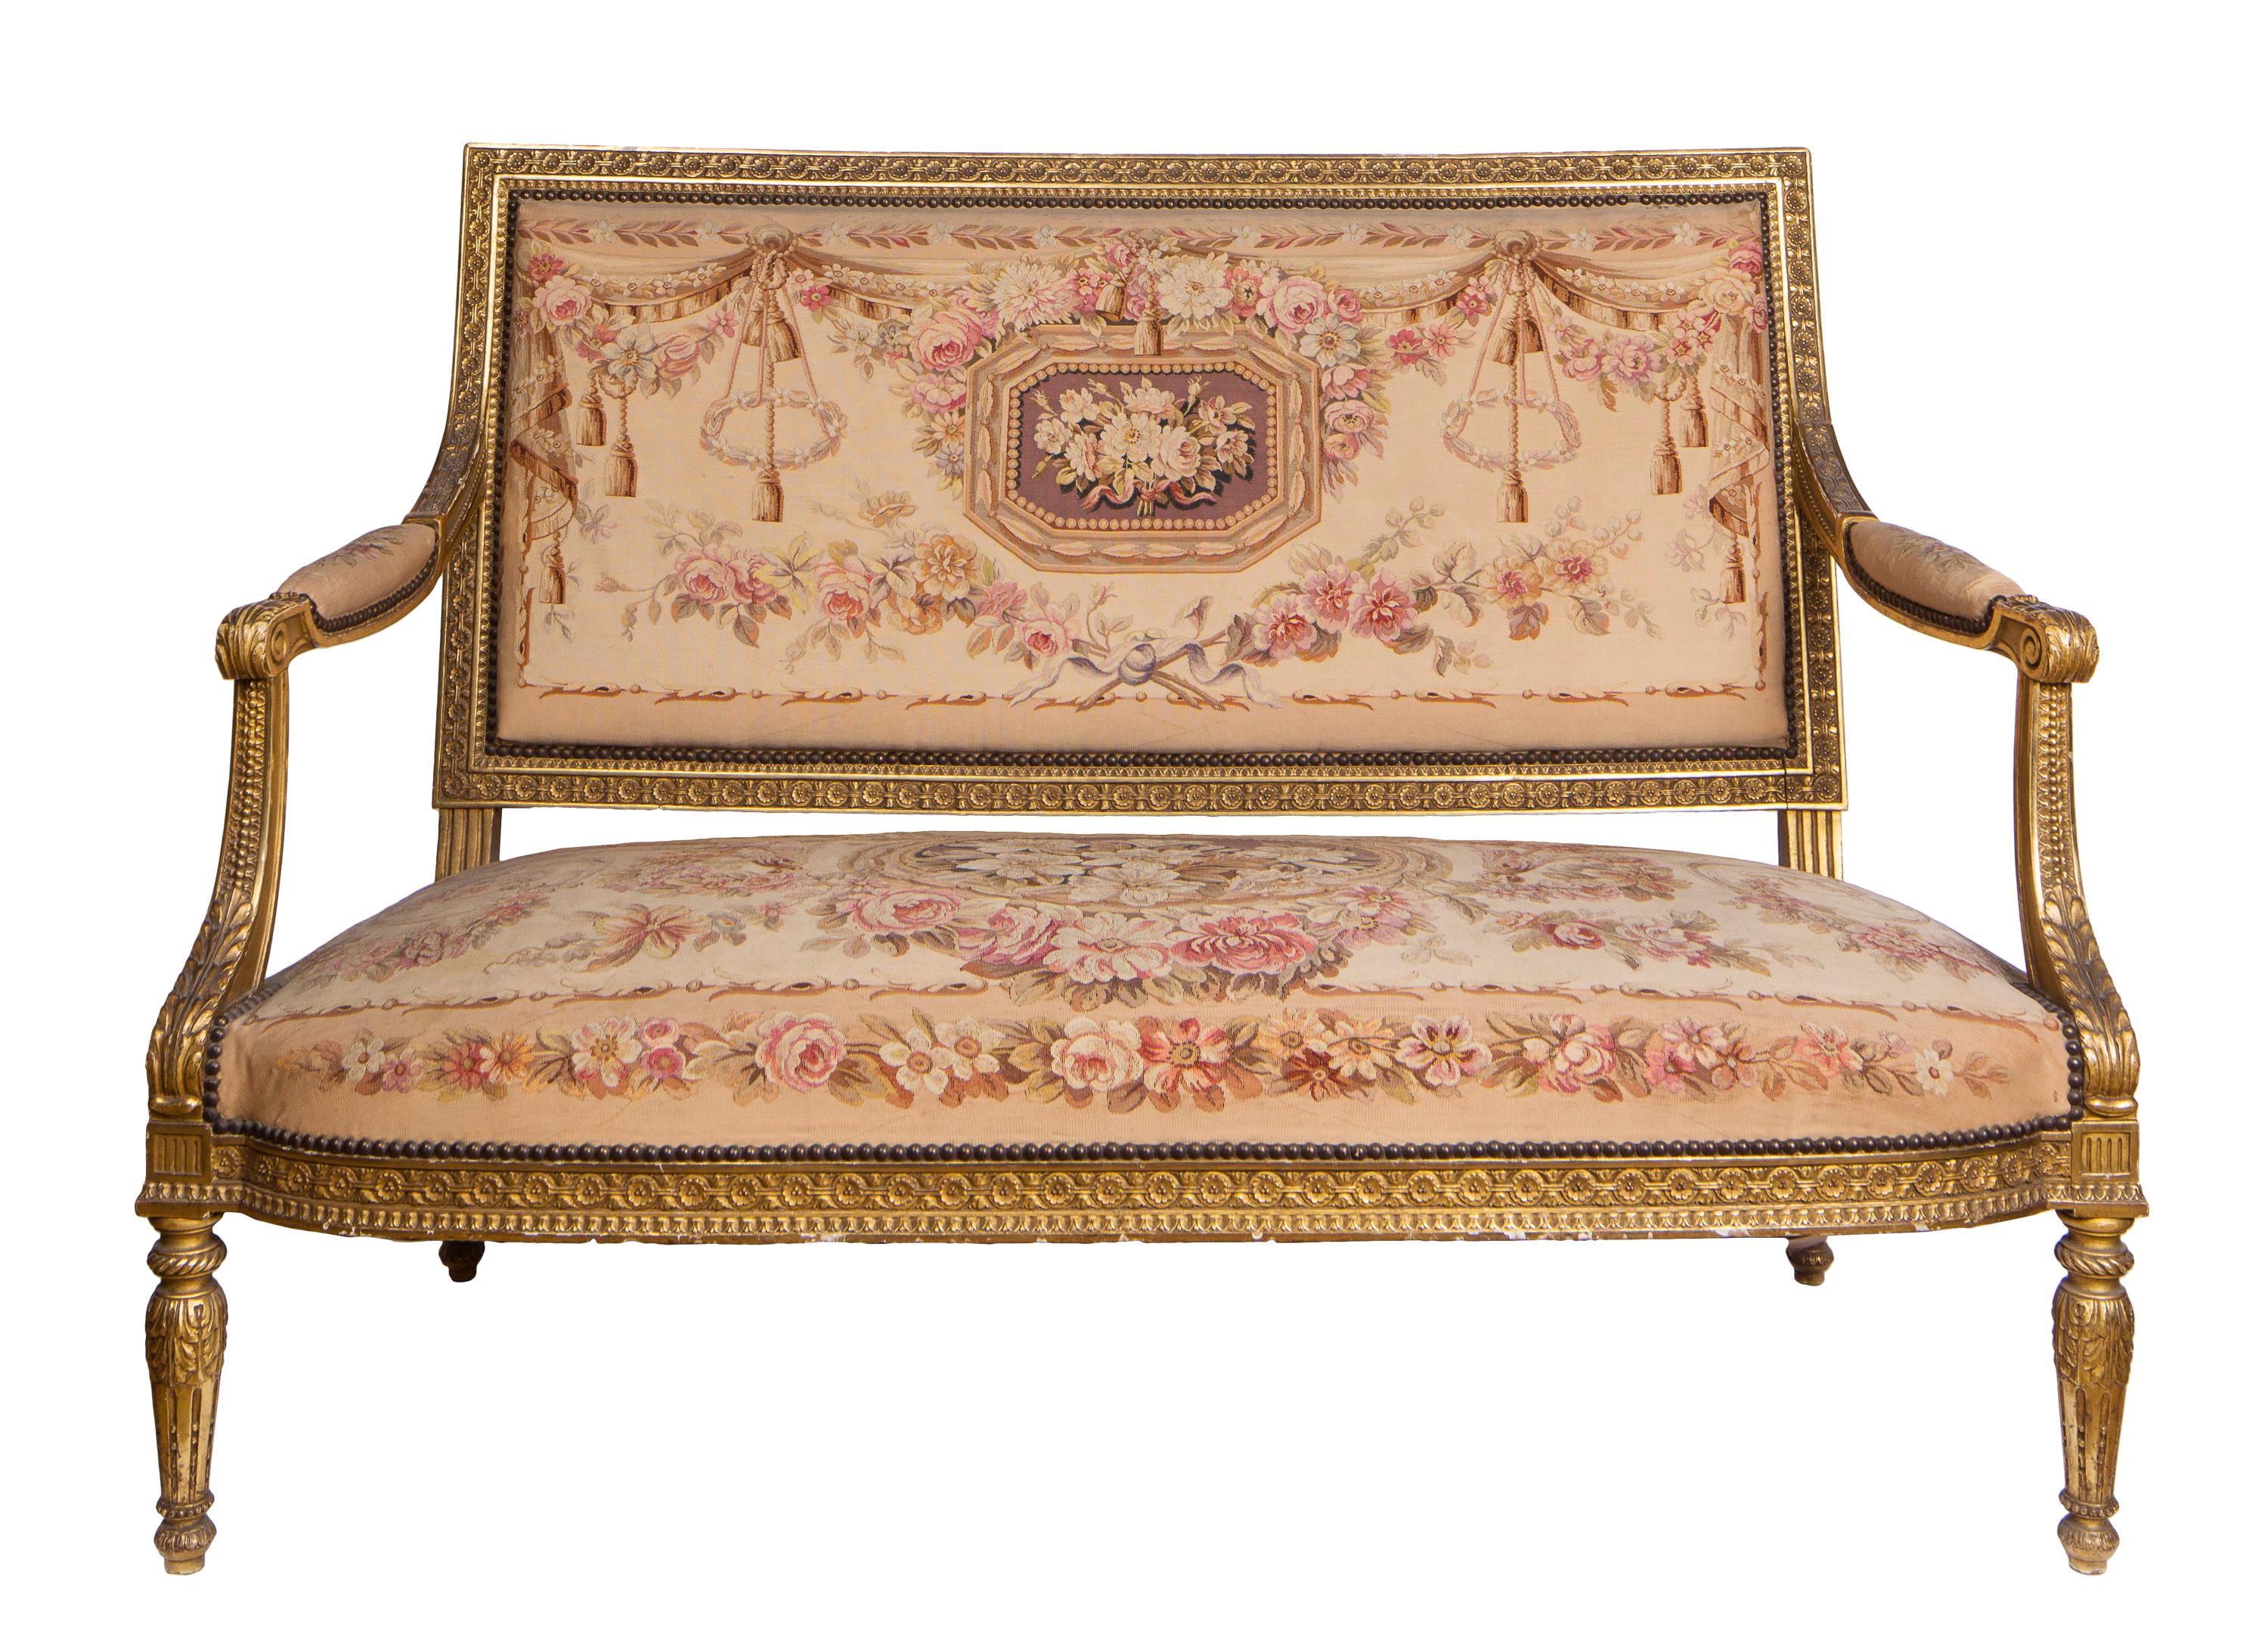 Eine fünfteilige Salongarnitur im französischen Louis-XVI-Stil des 19. Jahrhunderts, bestehend aus einem Sofa und vier passenden Sesseln. Alle fünf Stücke haben kunstvoll geschnitzte Möbelrahmen aus Goldholz und sind mit einem in Frankreich